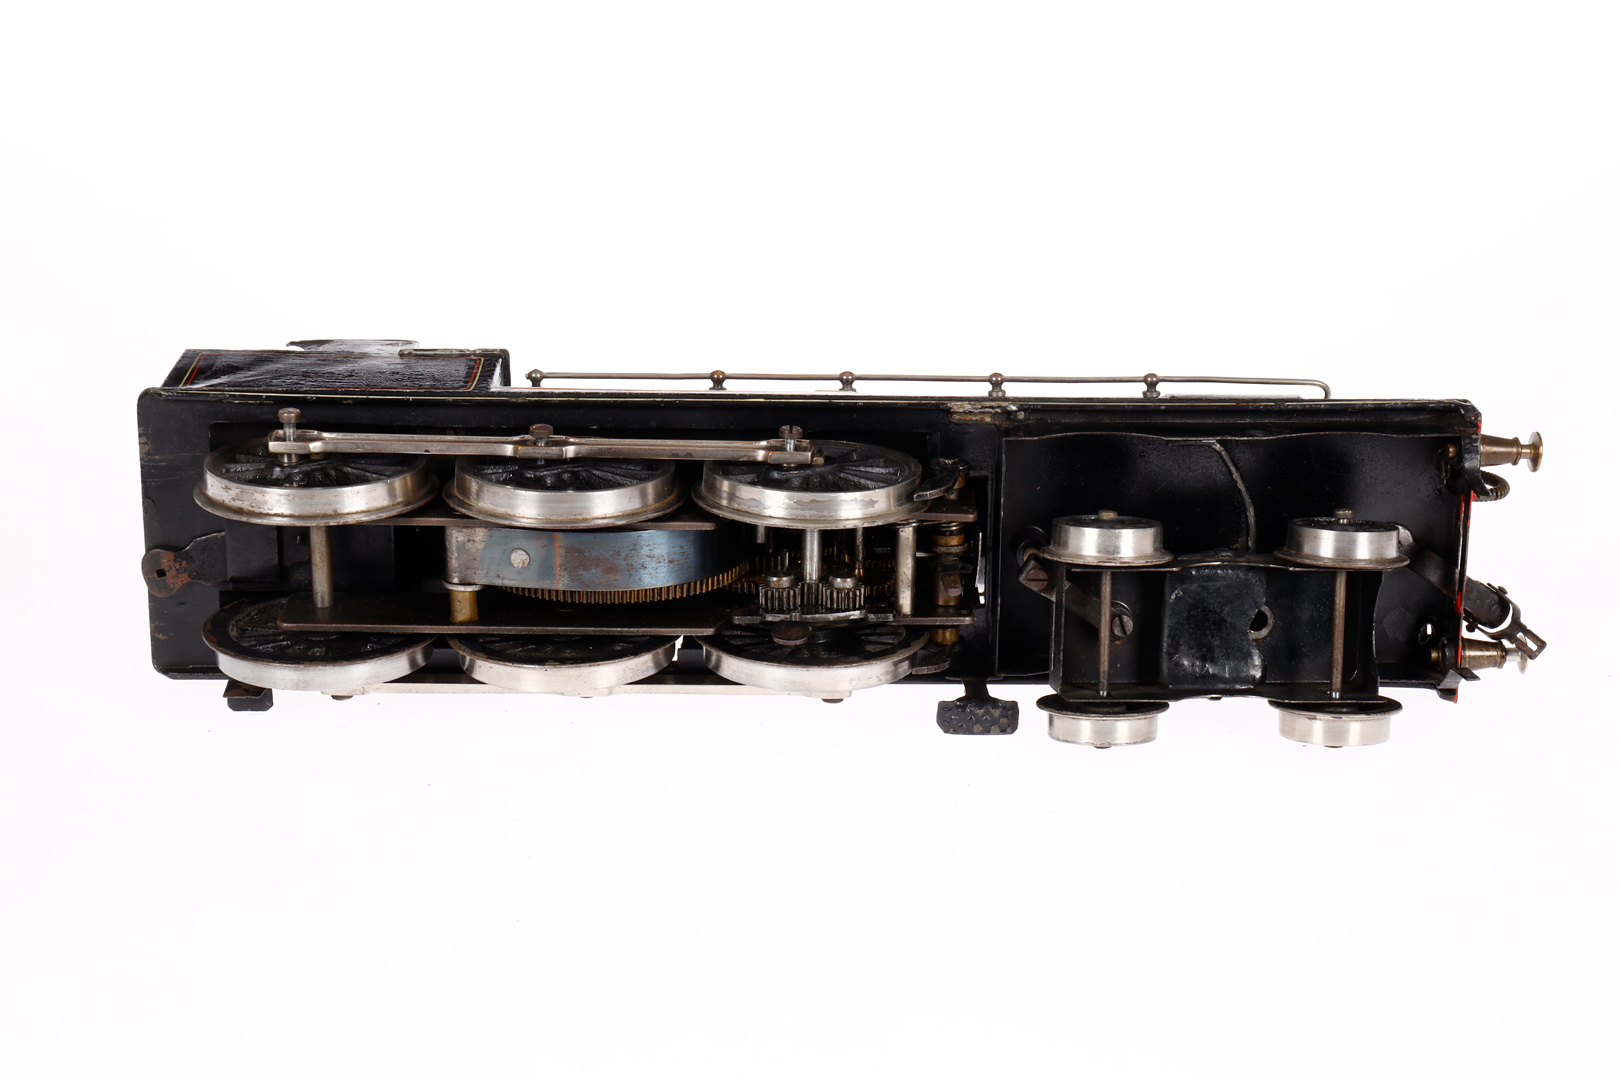 Märklin engl. 2-C Dampflok G 1021 LNWR, Spur 1, Uhrwerk intakt, schwarz, mit 1 imit. Stirnlampe (2 - Image 4 of 4